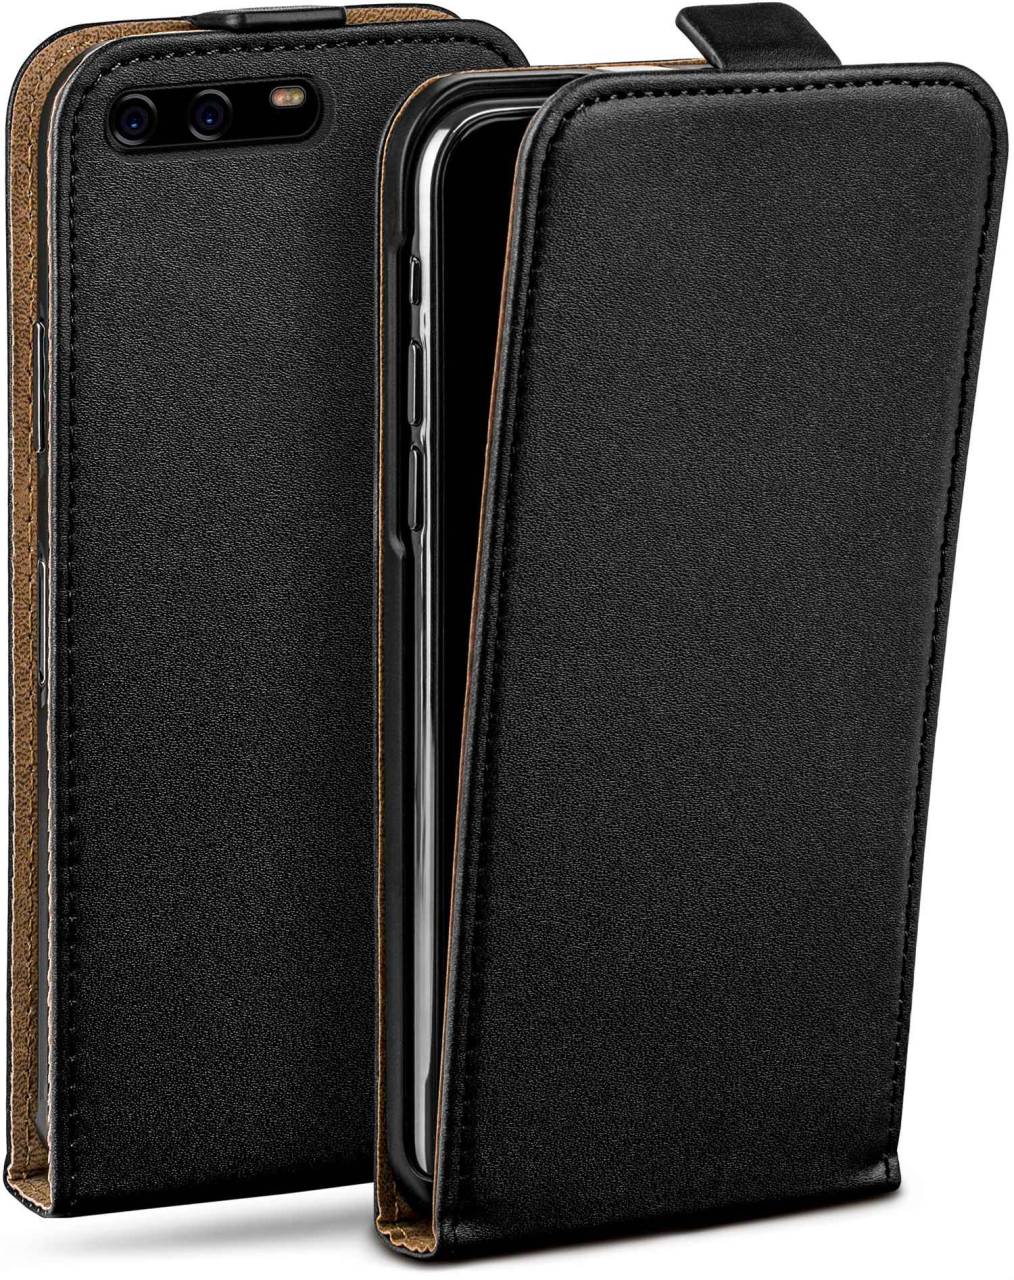 moex Flip Case für Huawei P10 – PU Lederhülle mit 360 Grad Schutz, klappbar